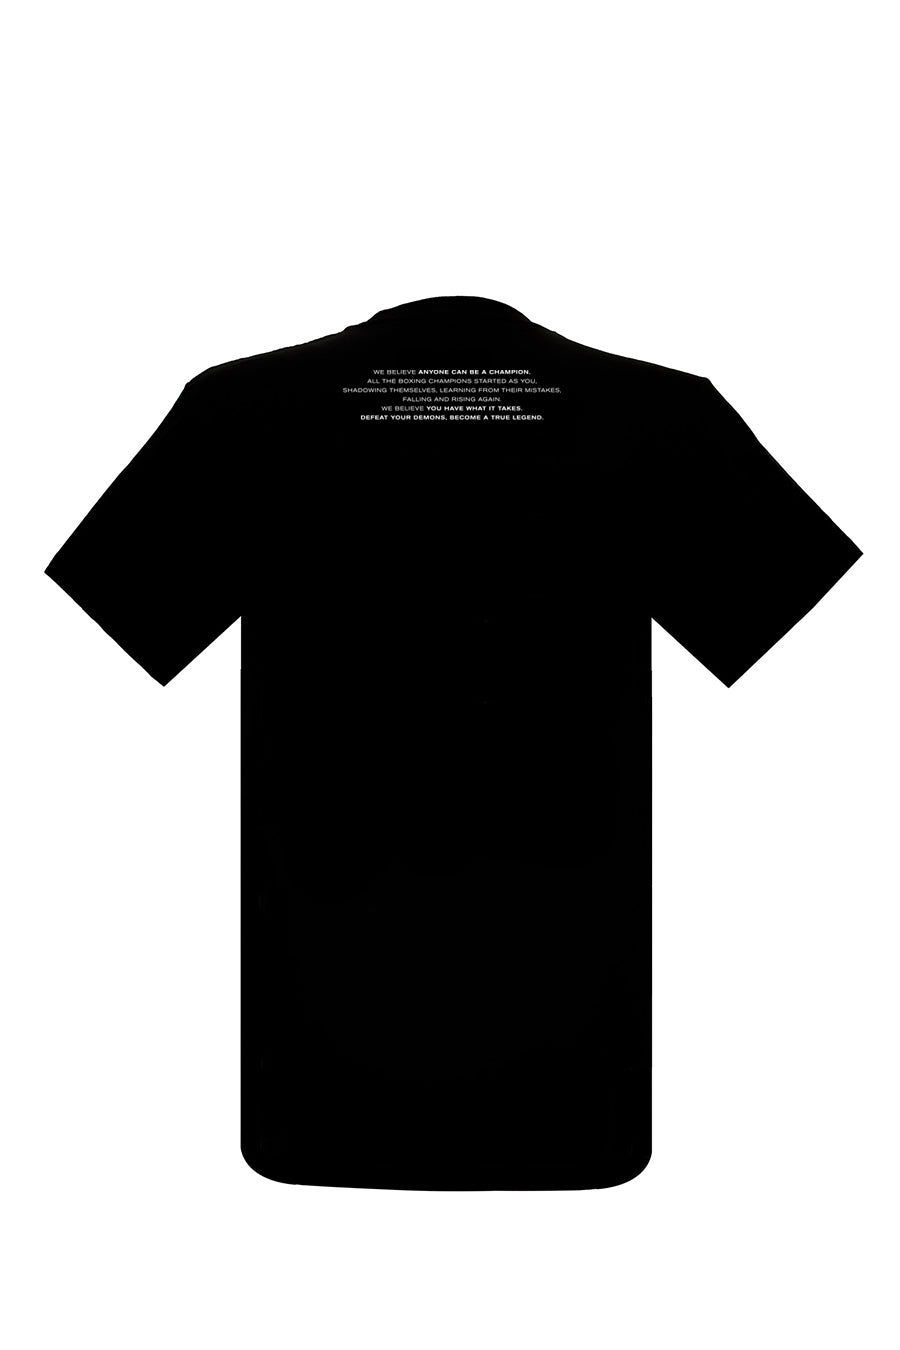 Camiseta BOXEO AZTECA - MOLUBOXING